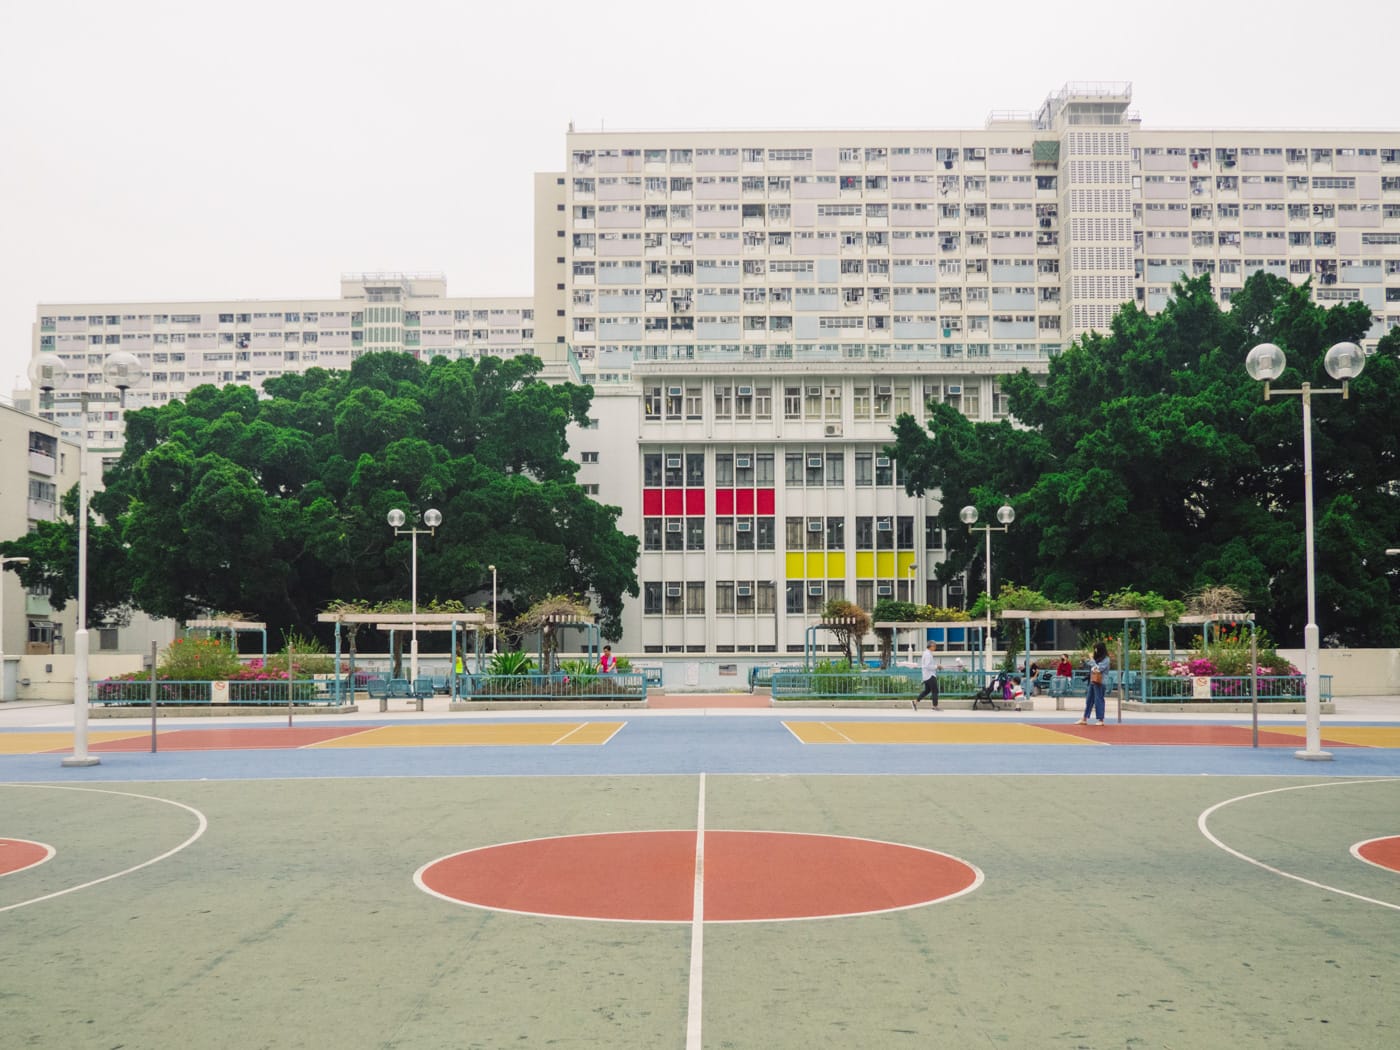 Hong Kong - Rainbow Estate - Basketball court